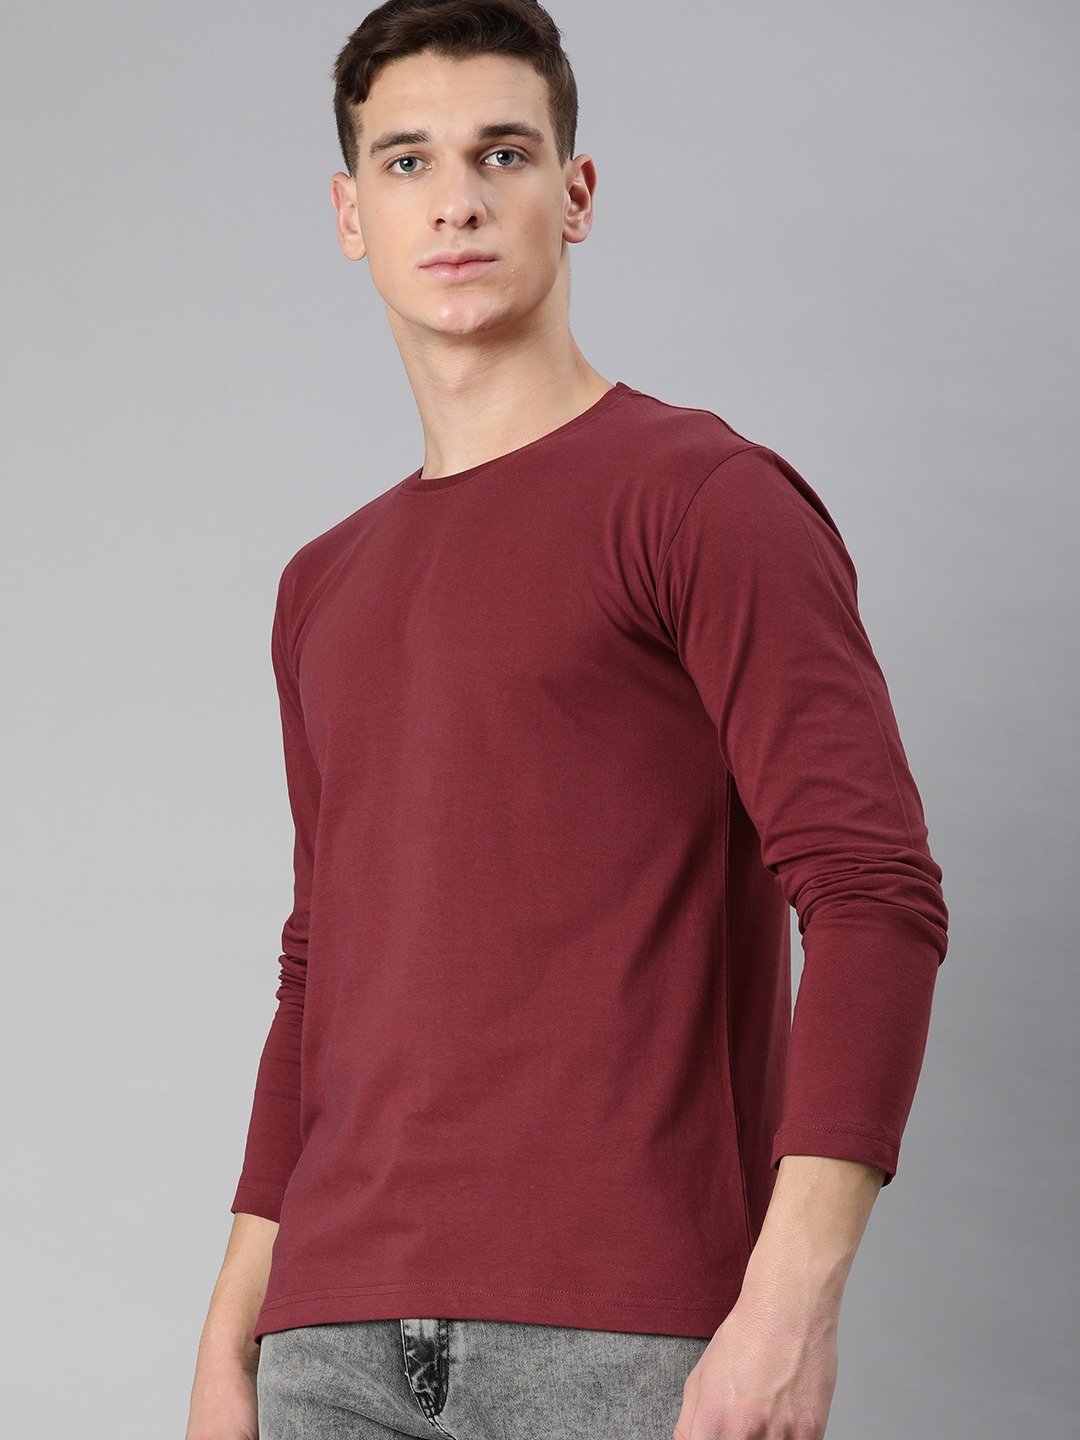 Men's full Sleeve Round Neck T-Shirt Maroon – Kjunction Online Store